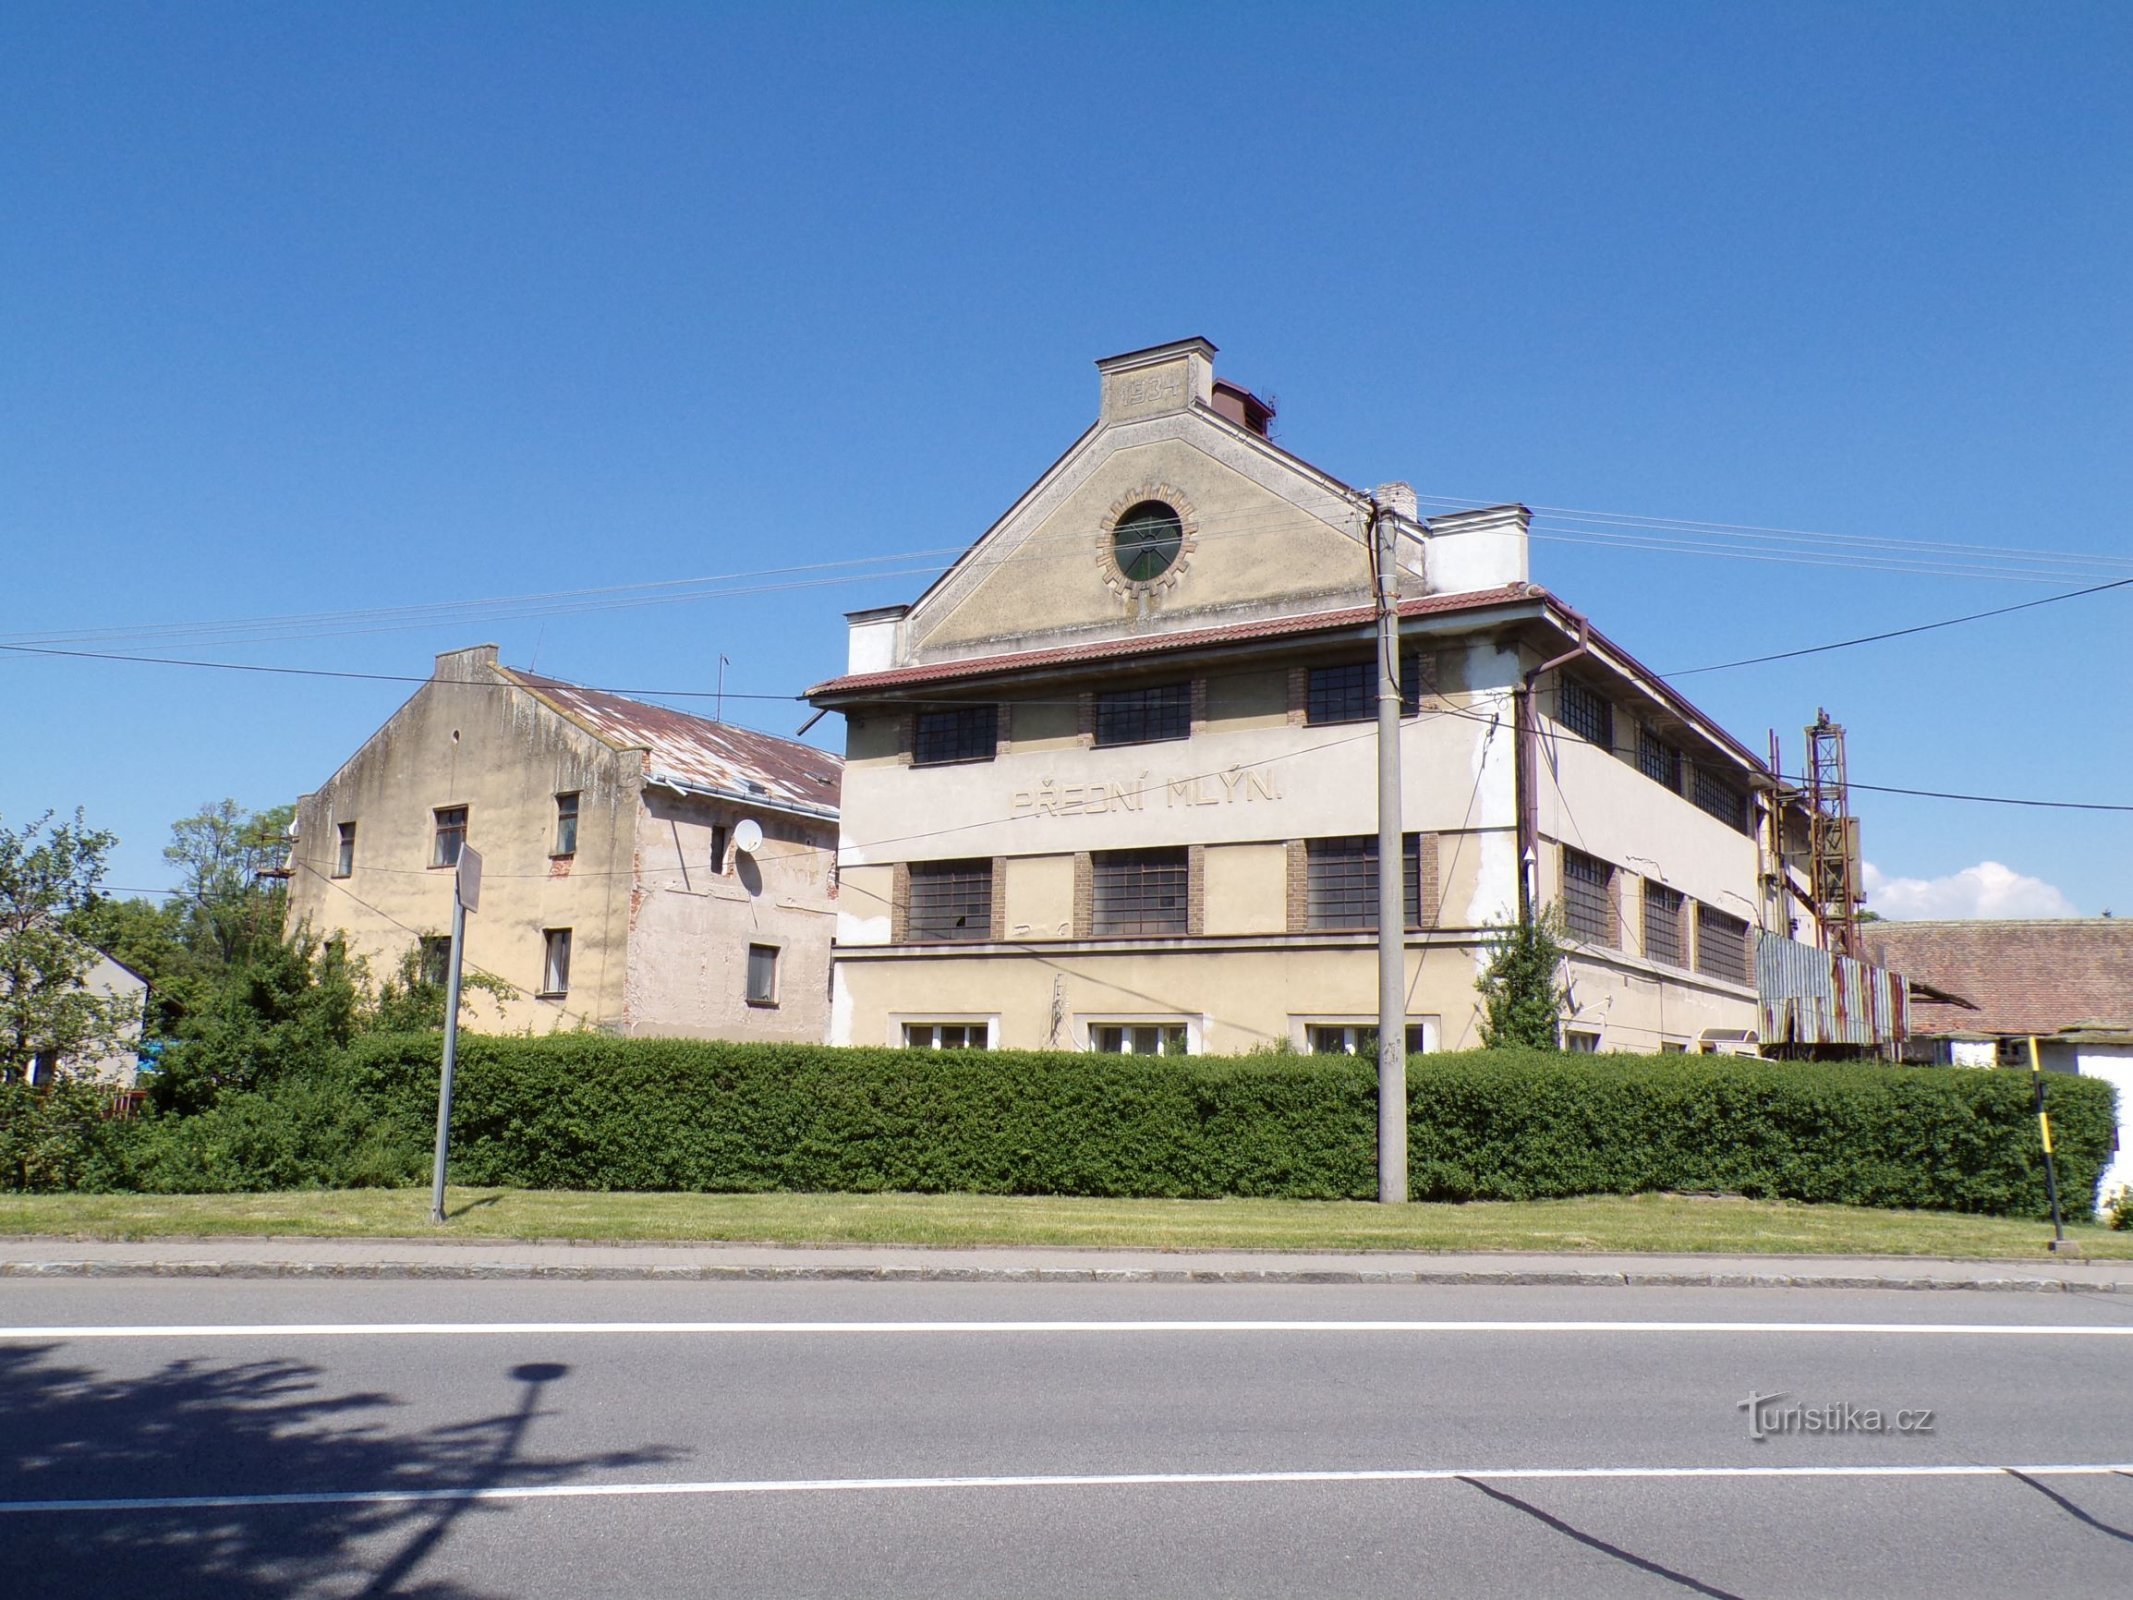 Die Vordere Mühle (zusammen mit der Hinteren Mühle, Lázně Bohdaneč, 3.6.2021. Juni XNUMX)